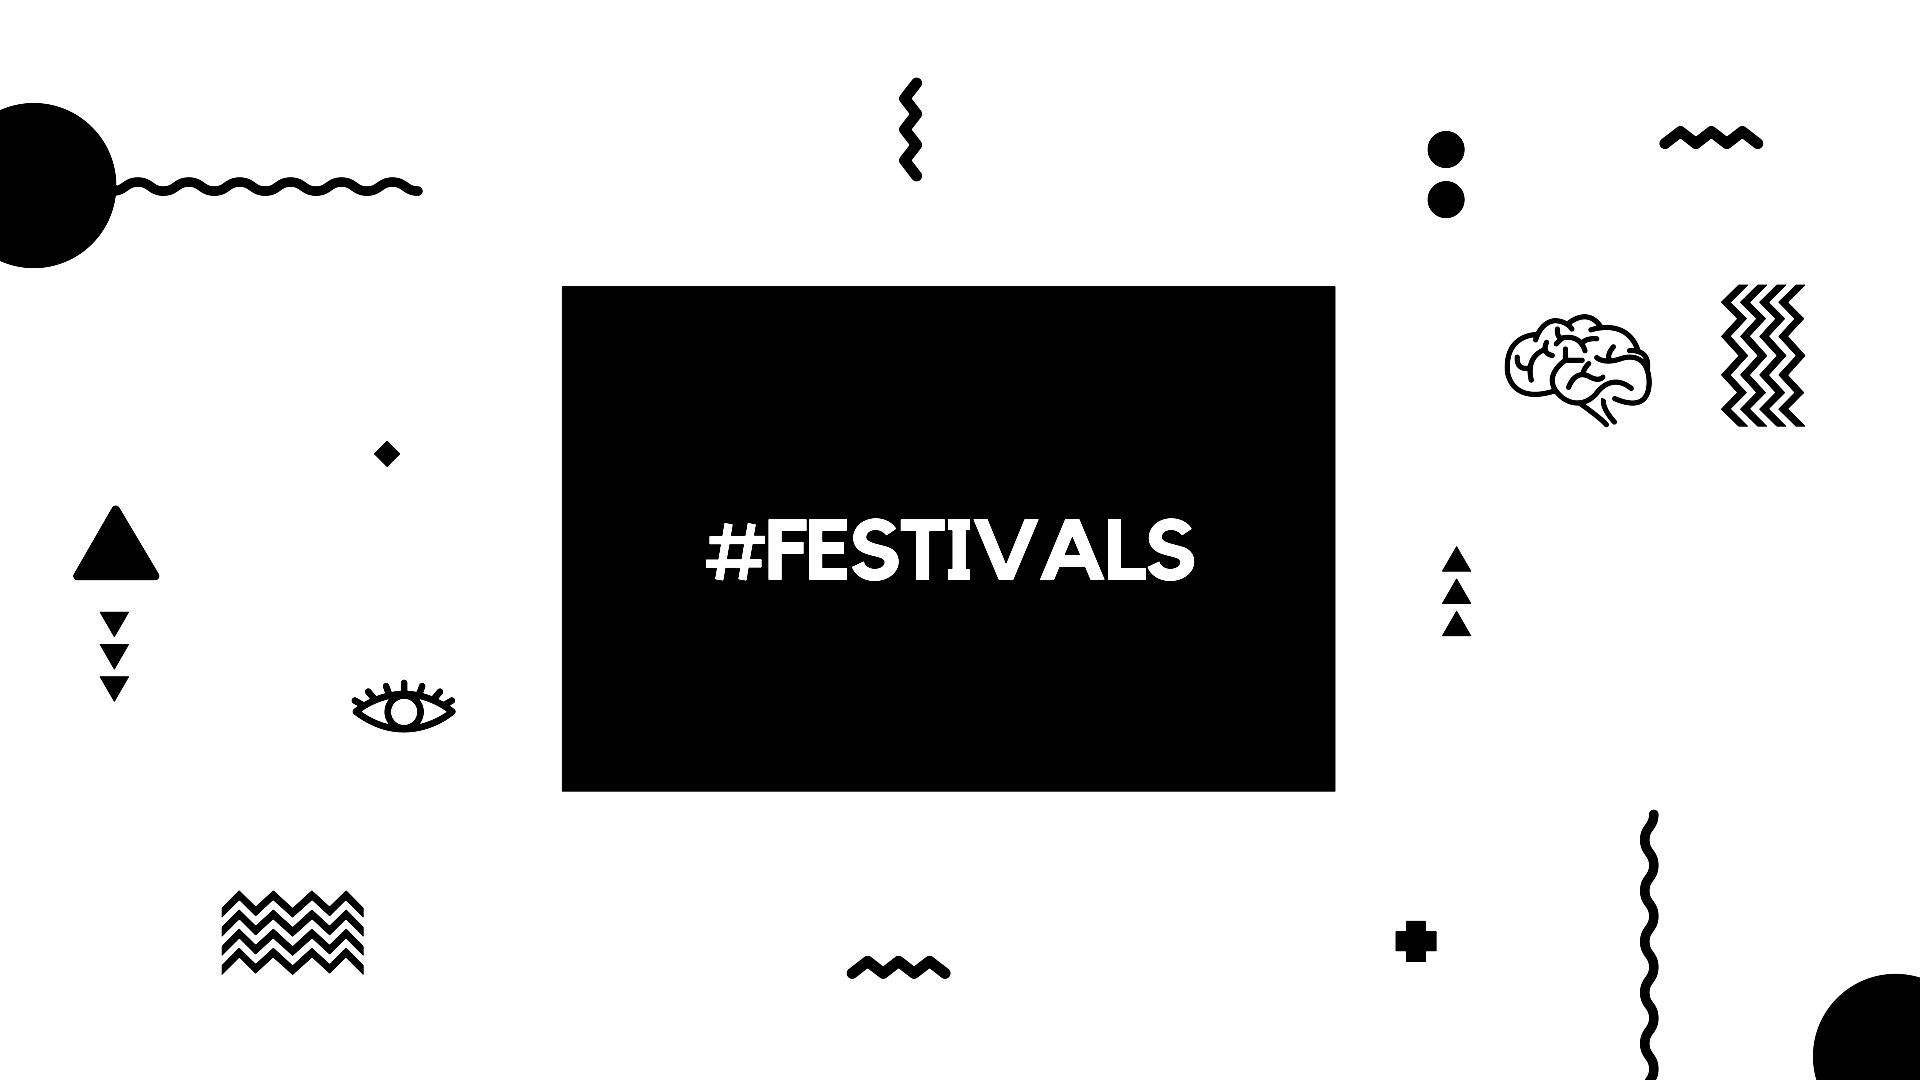 Festivals header